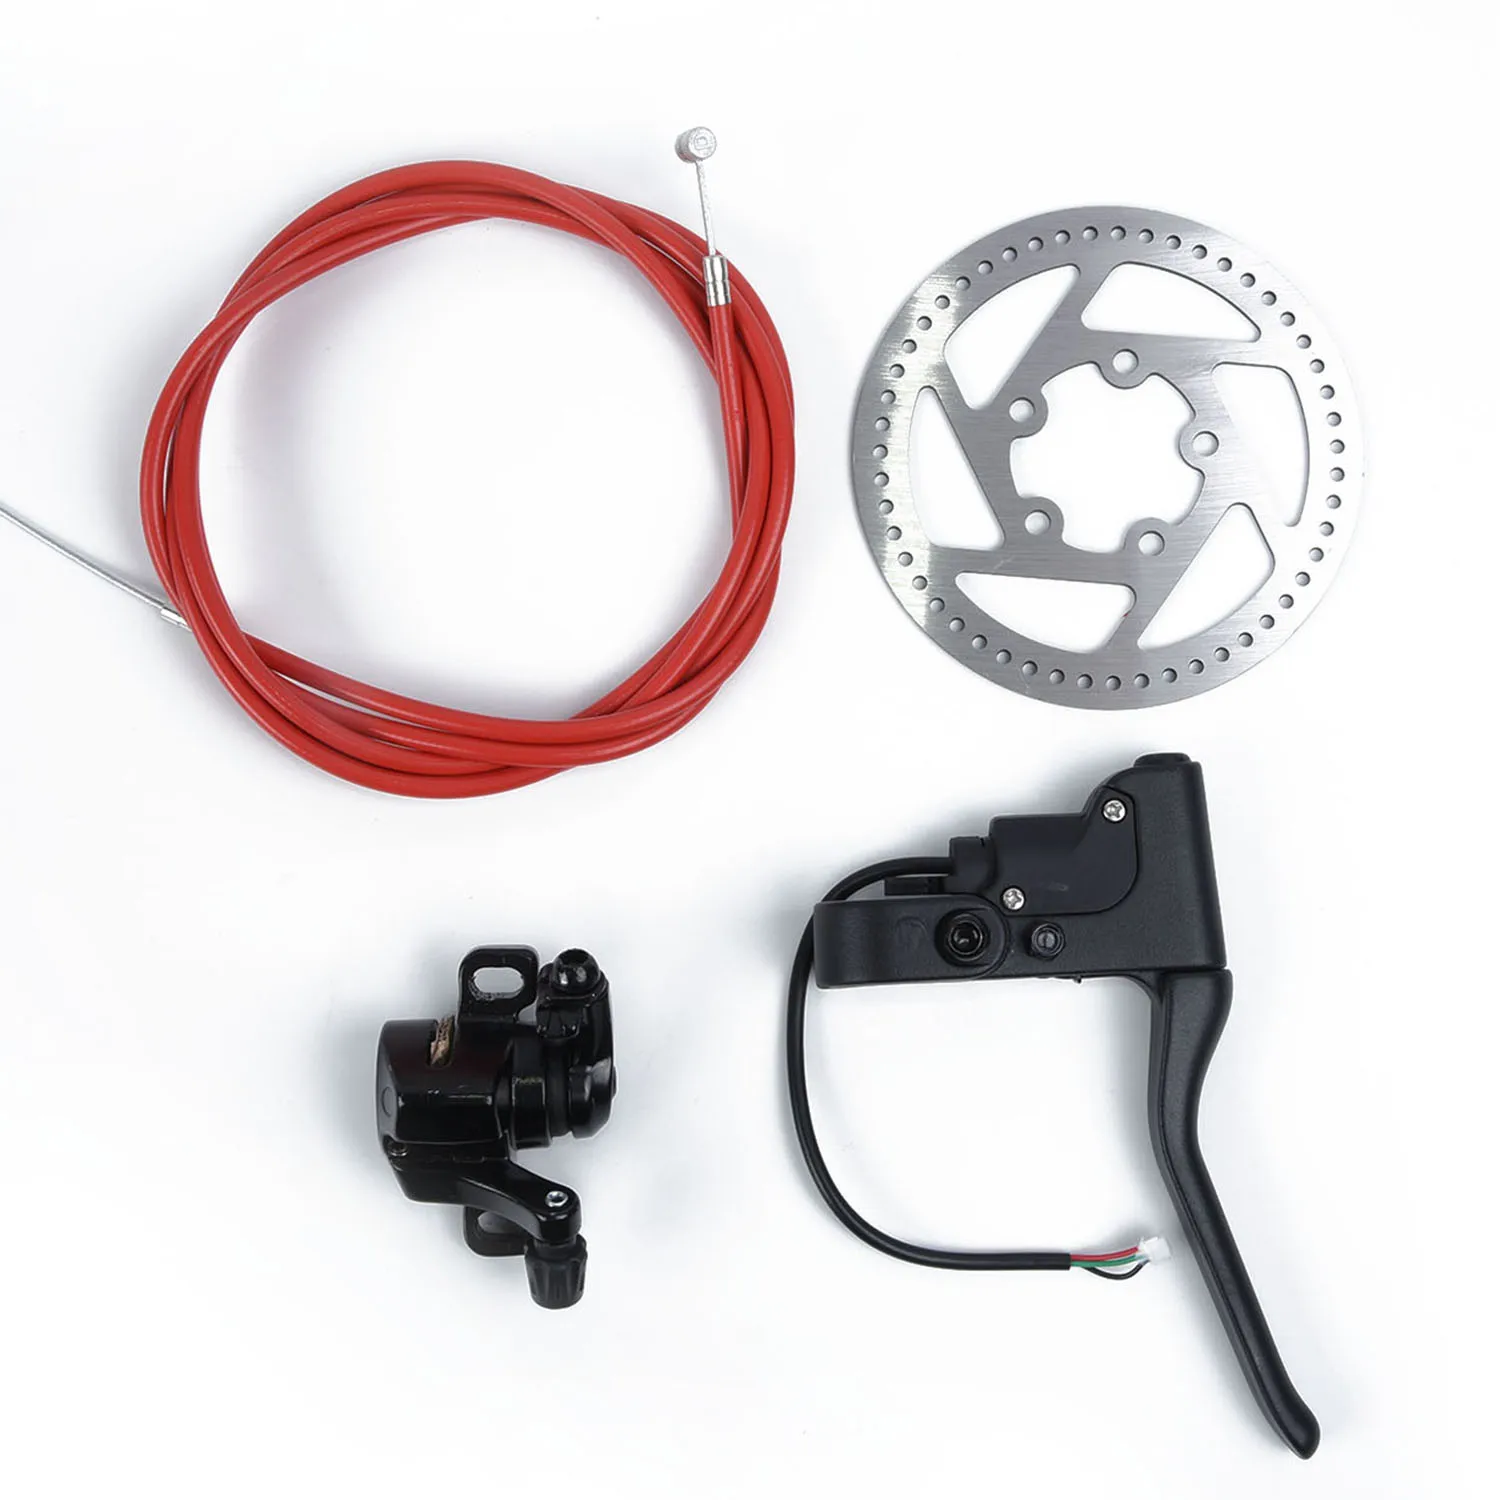 Замена тормозного кабеля для Xiaomi Mi M365 электрический скутер аксессуары Запчасти